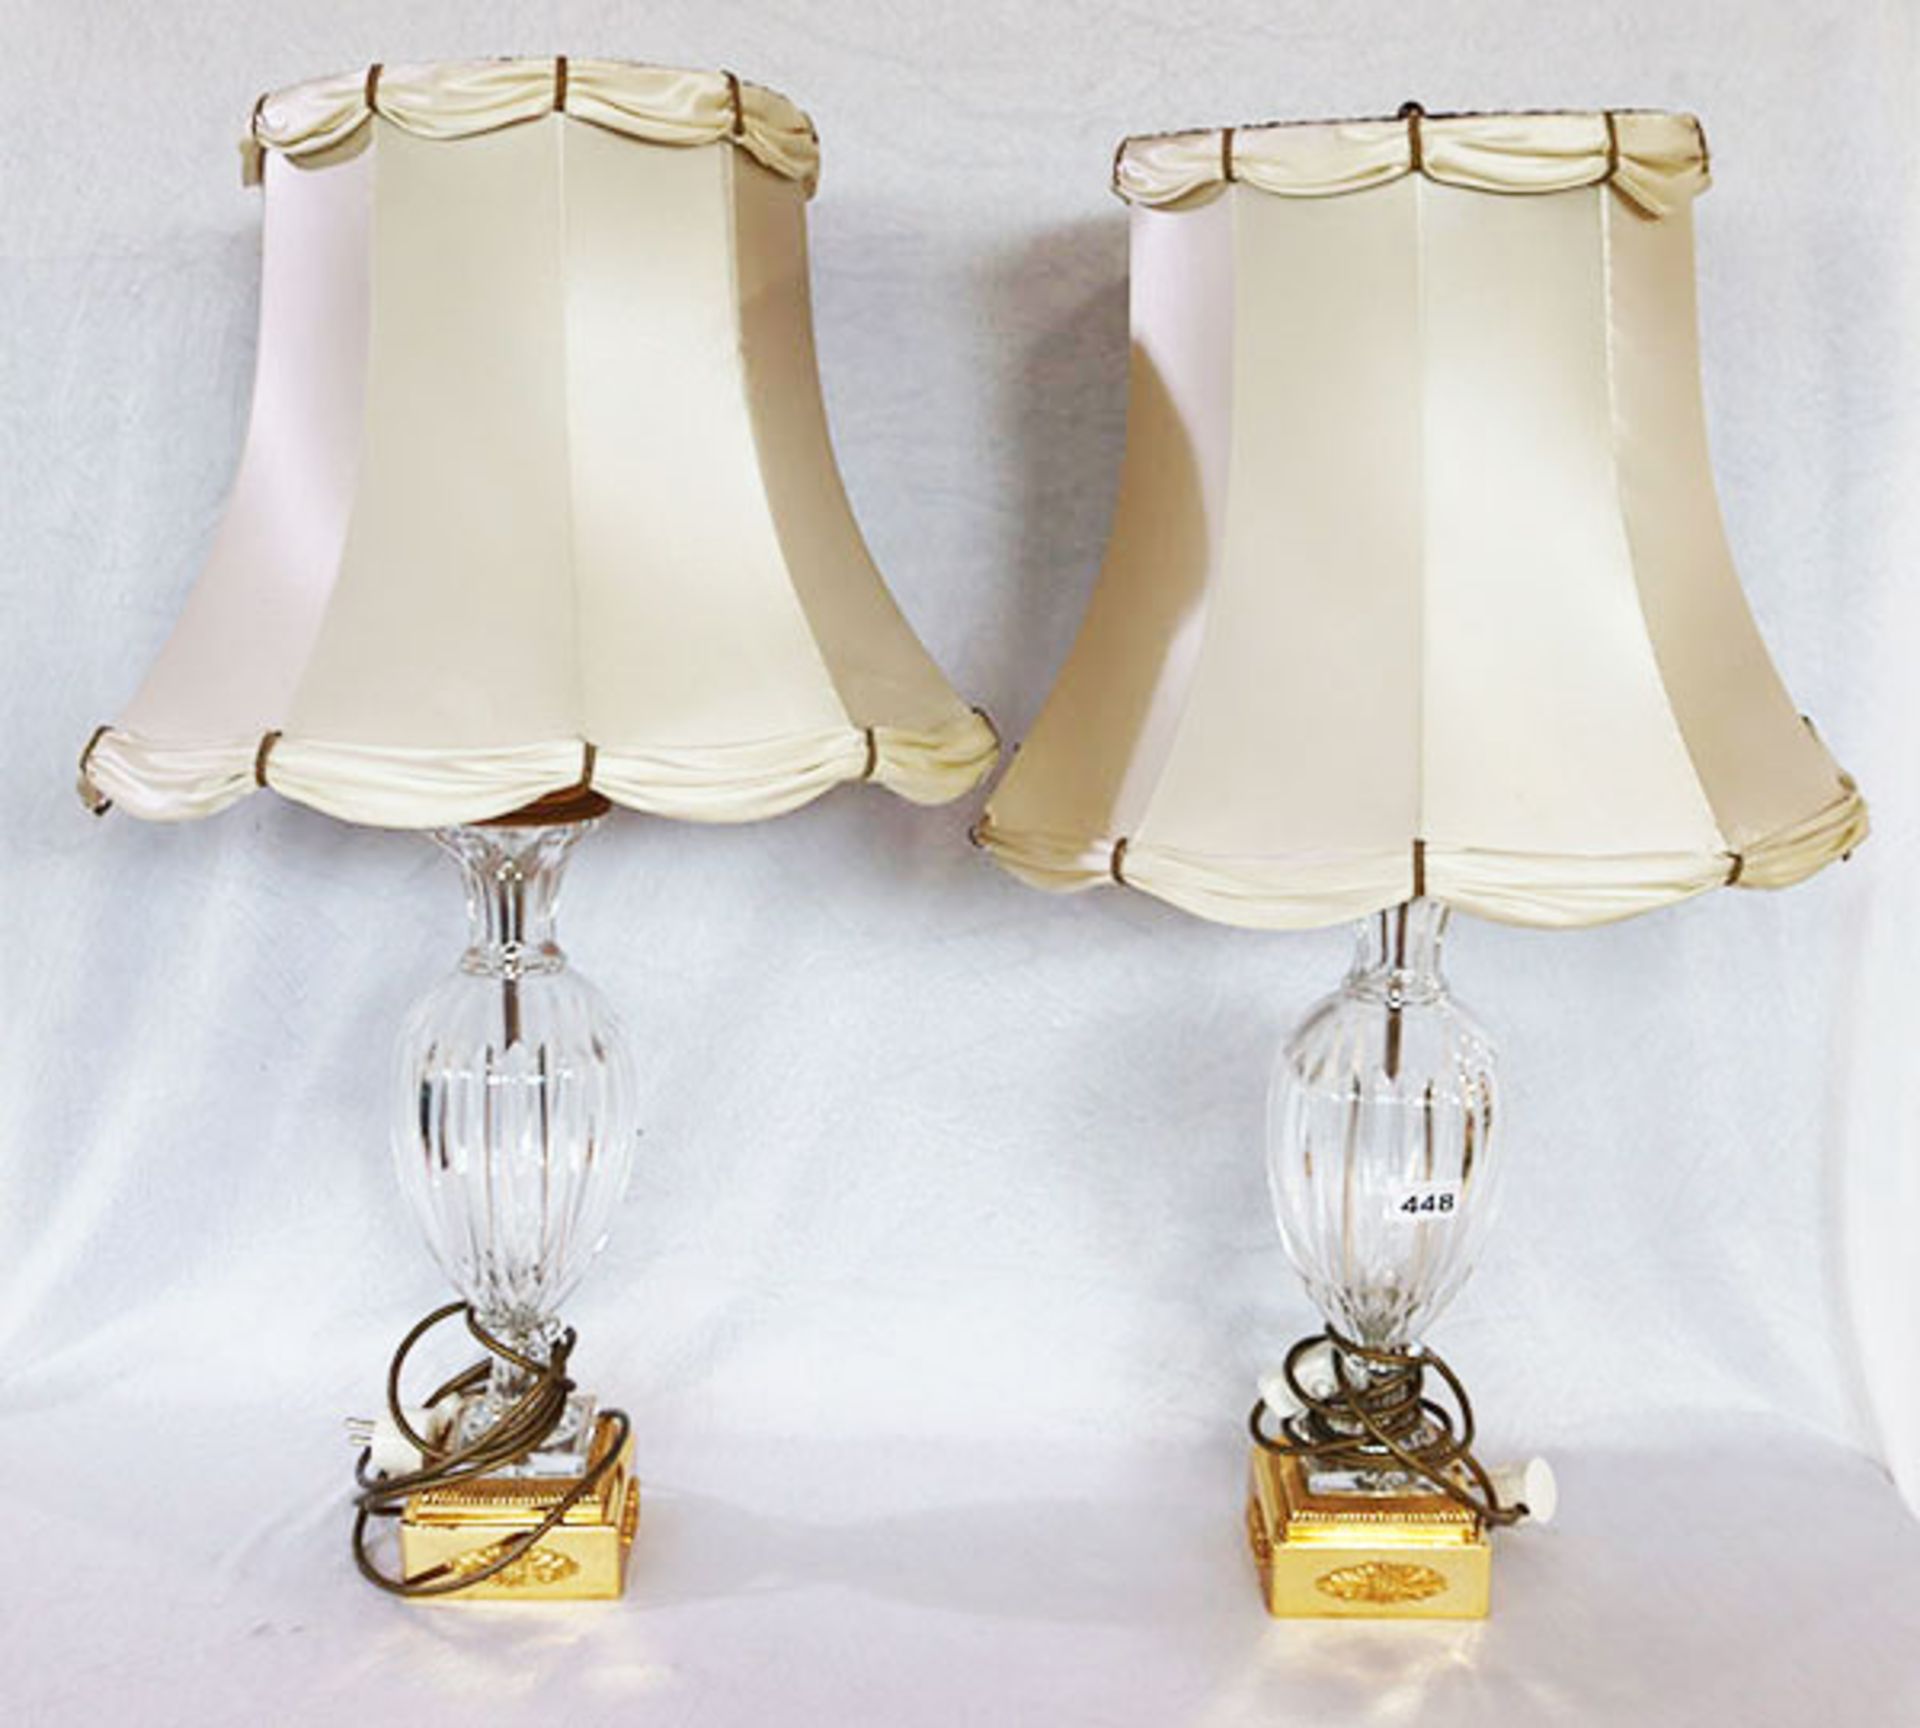 Paar Glas/Messing Tischlampen mit beigen Schirmen, H 76 cm, D 45 cm, Funktion nicht geprüft,